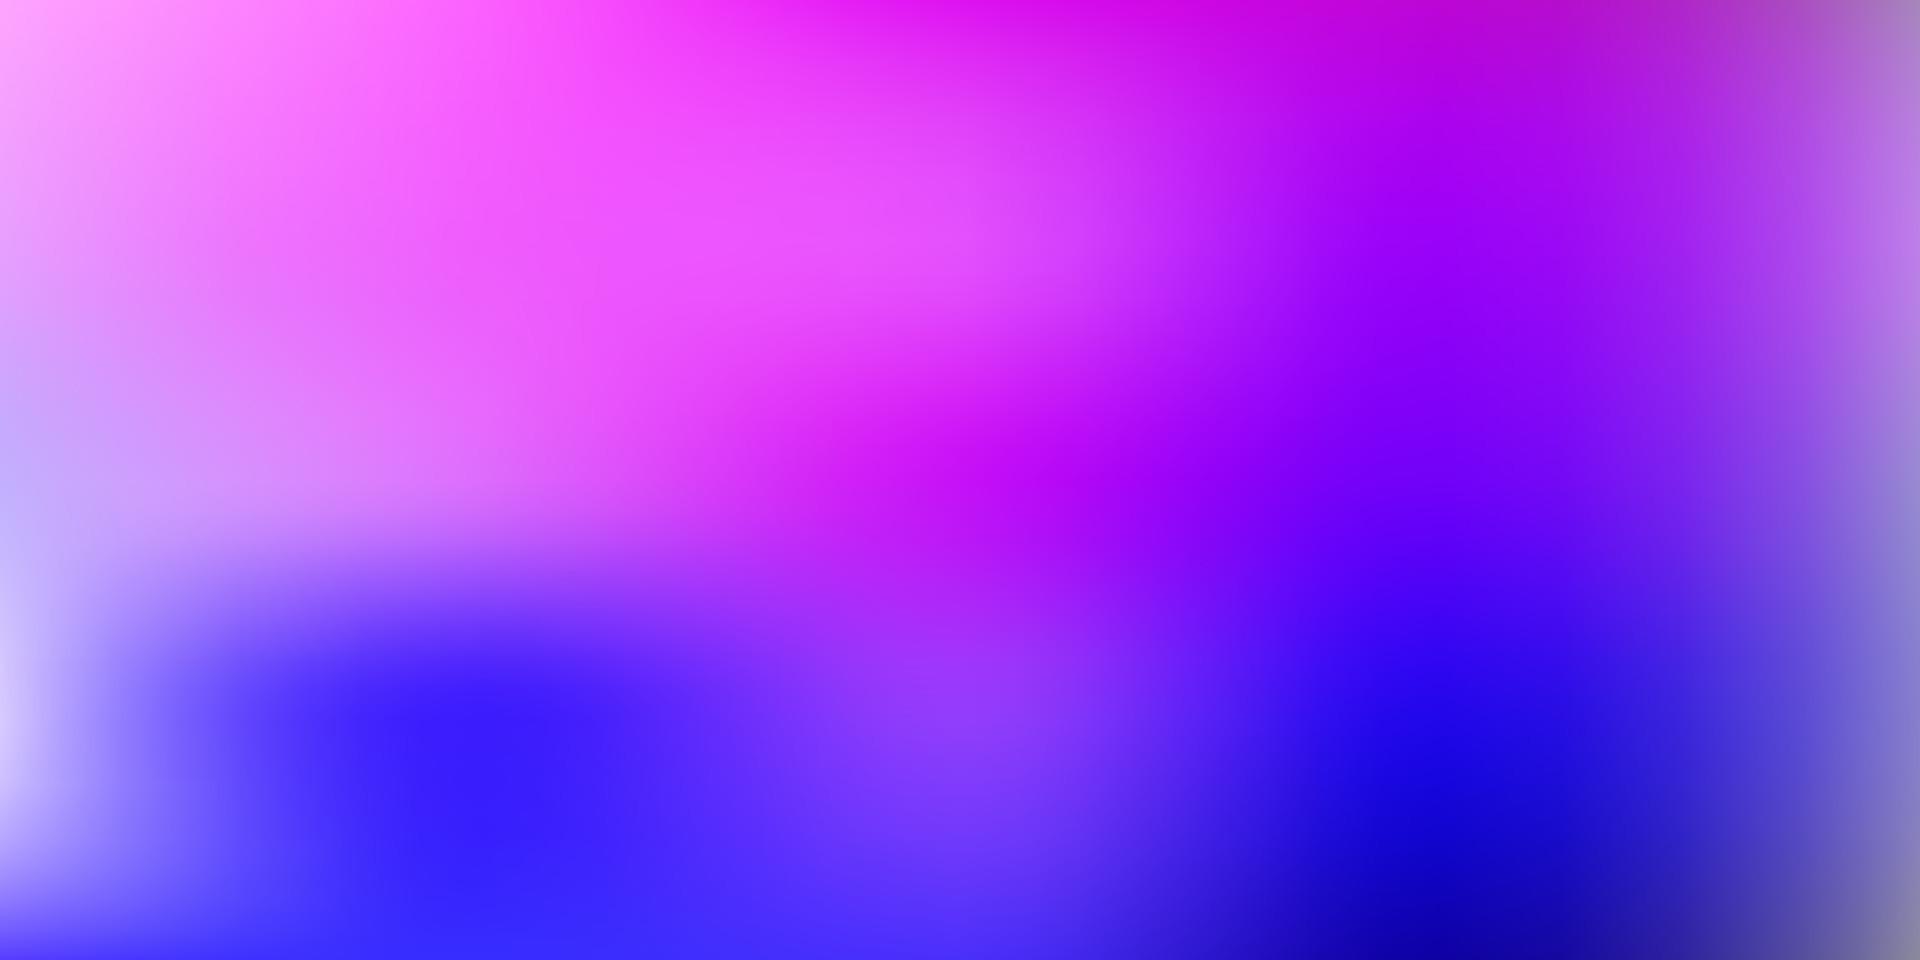 vector de color rosa claro, azul fondo borroso.